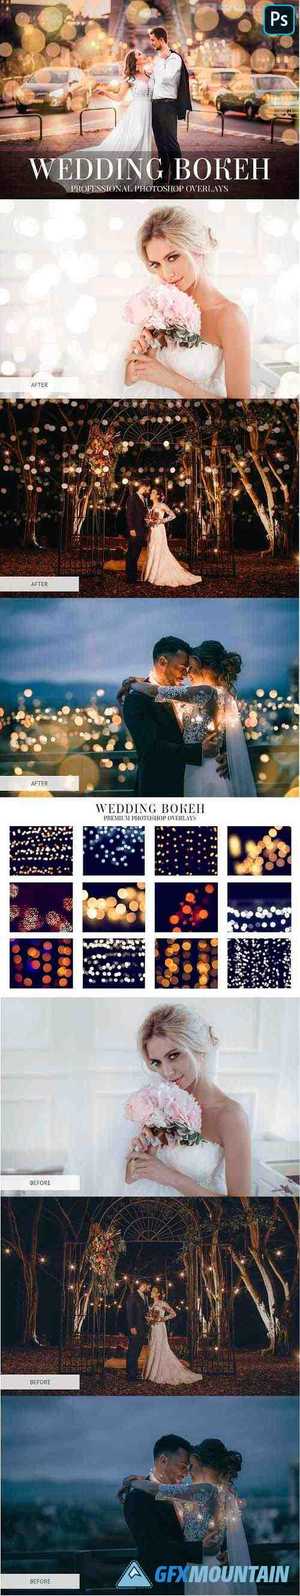 Wedding Bokeh Overlays 4934941